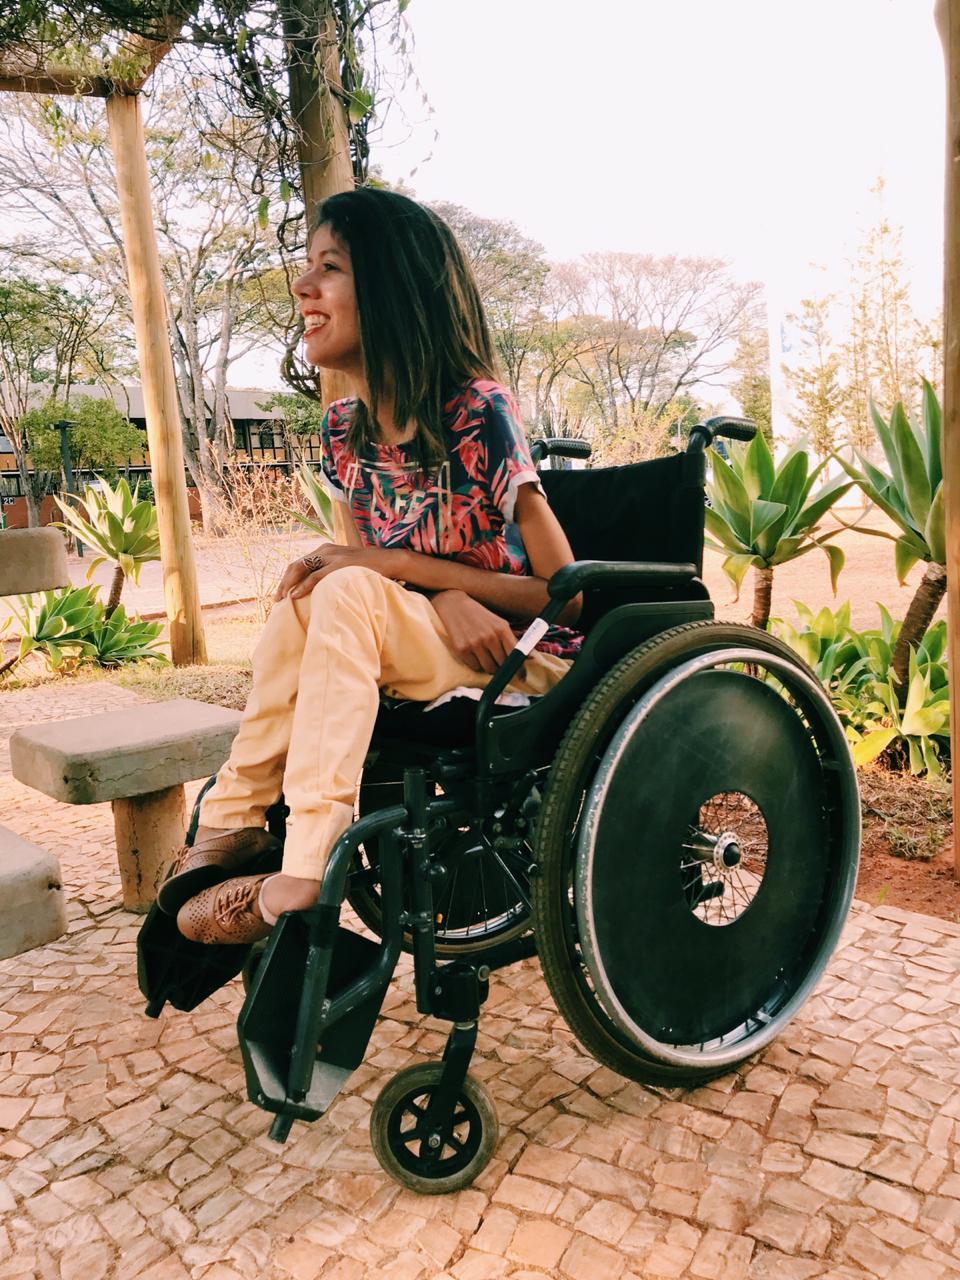 Foto da Fatine Oliveira, ela tem cabelos castanhos até o ombro, veste uma blusa estampada, uma calça amarela e sapatos marrons, sentada em uma cadeira de rodas. Ao fundo, um jardim.